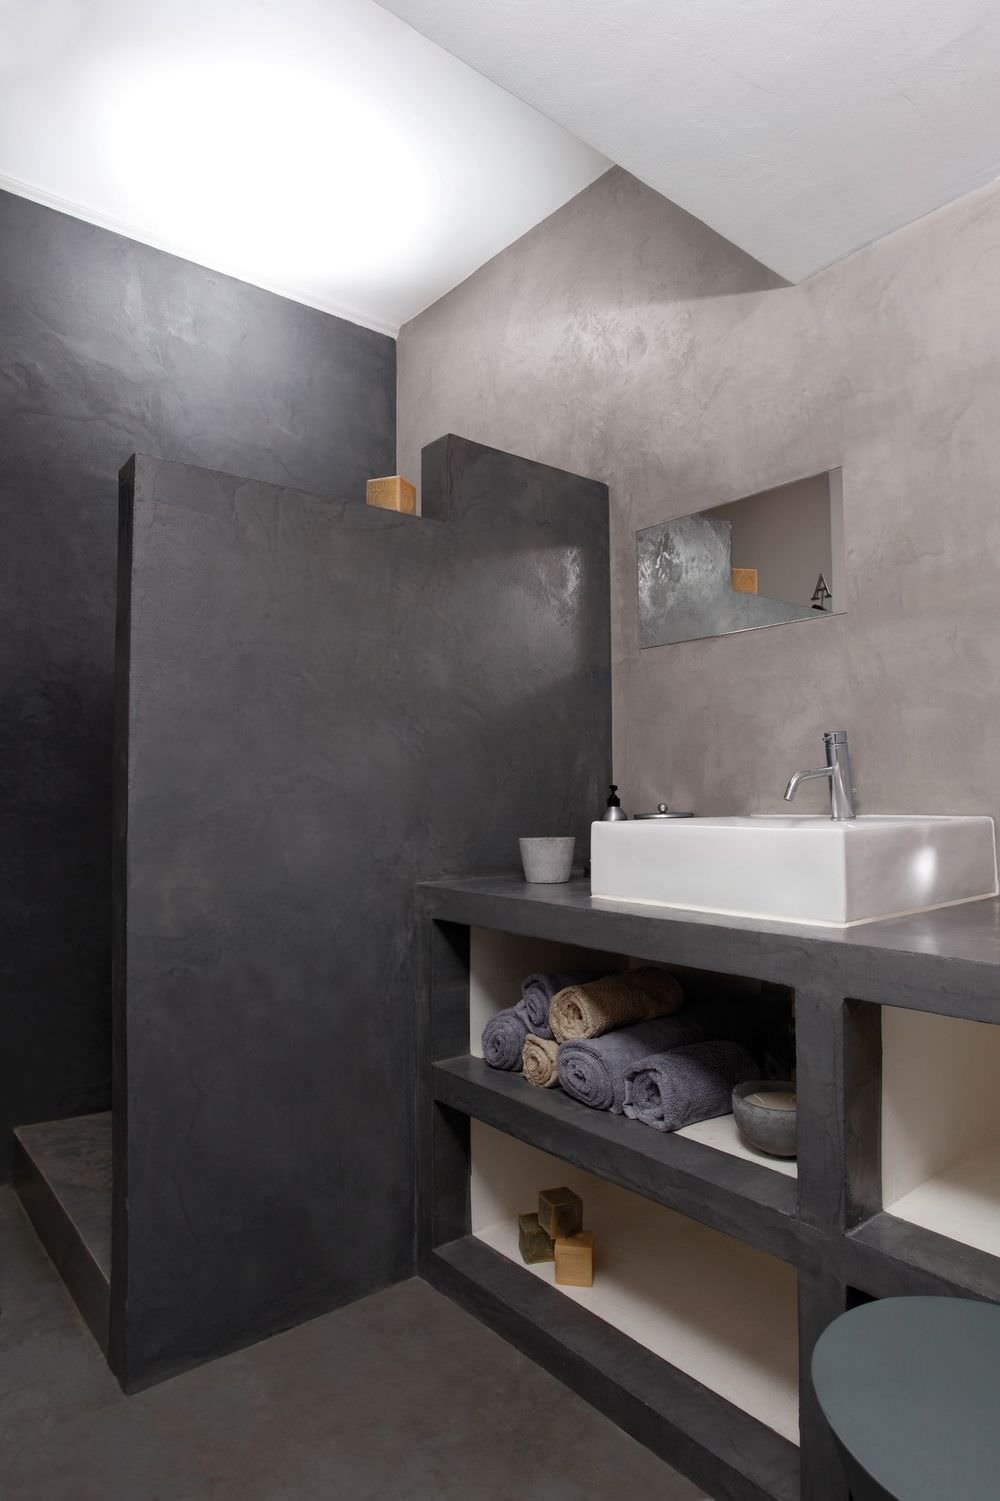 Bagno con pavimenti e rivestimento in resina cementizia in due colori: nero e grigio, per creare uno stile moderno e raffinato